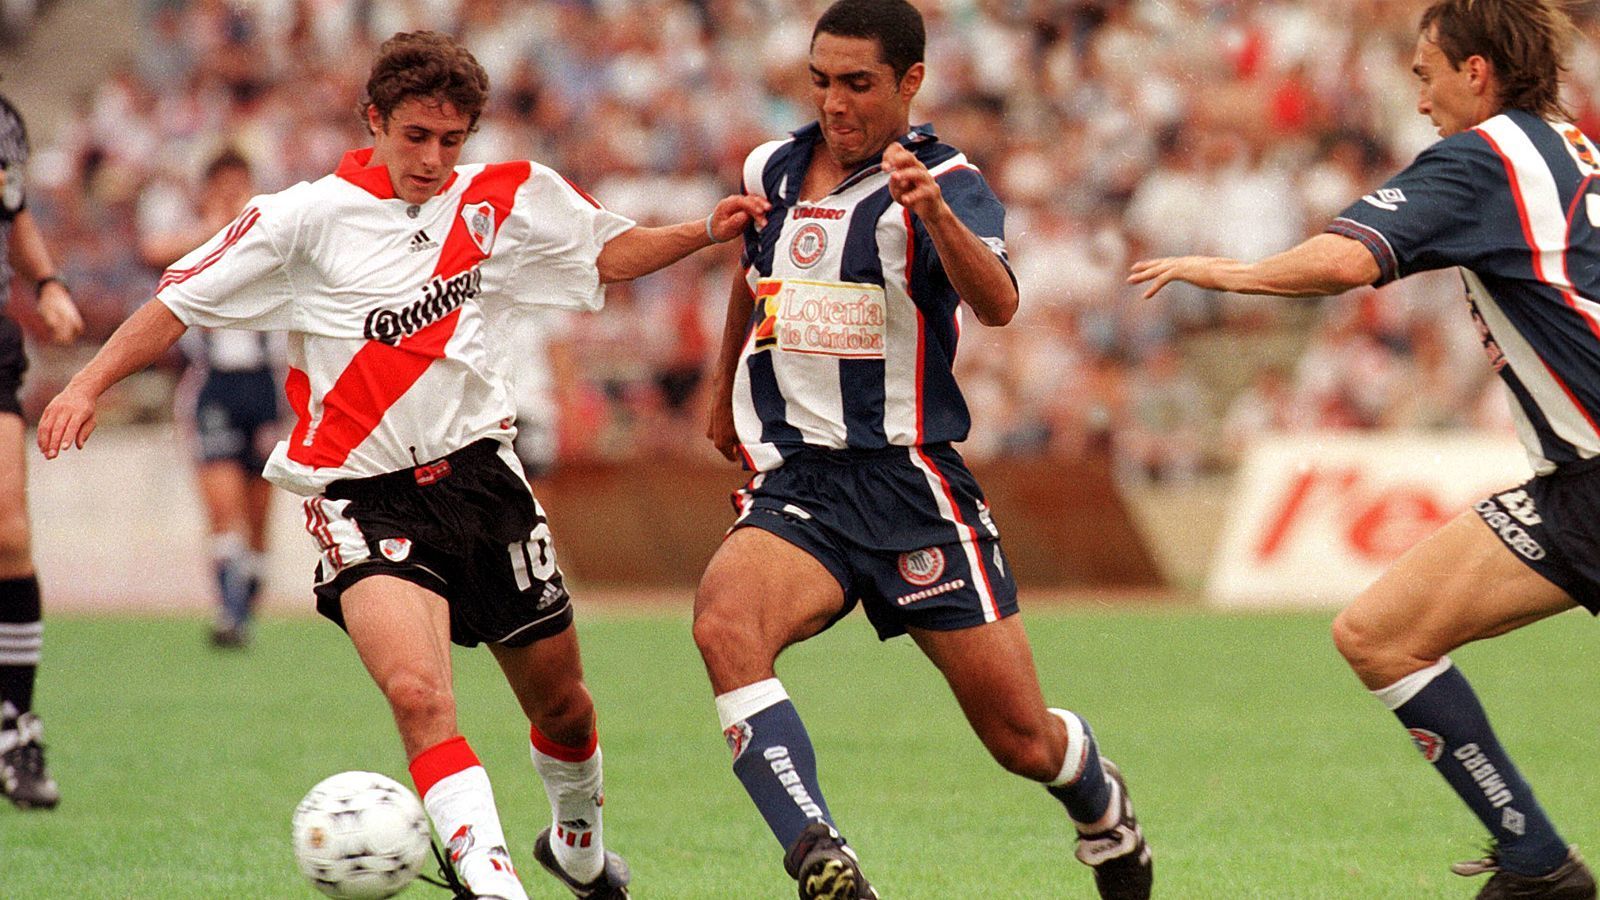 
                <strong>Pablo Aimar (River Plate)</strong><br>
                Zeit im Verein: Sommer 1997 bis Januar 2001, Januar 2015 bis Sommer 2015 (aus der eigenen Jugend)Position: MittelfeldAimar (l.) gilt als einer der begnadetsten Fußballer in der Historie von River Plate. Kein Geringerer als Lionel Messi zählte ihn in seiner Anfangszeit zu seinen großen Vorbildern. Wegen seiner Gebaren wurde der Angehimmelte, dem die ganz große Karriere verwehrt blieb, nicht nur "El Mago" (der Magier) sondern auch "El Payaso" (der Clown) genannt. Sein Vater wollte eigentlich den frühen Wechsel zu River Plate im Jugendalter verbieten, doch der damalige Manager Daniel Passarella leistete Überzeugungsarbeit.
              